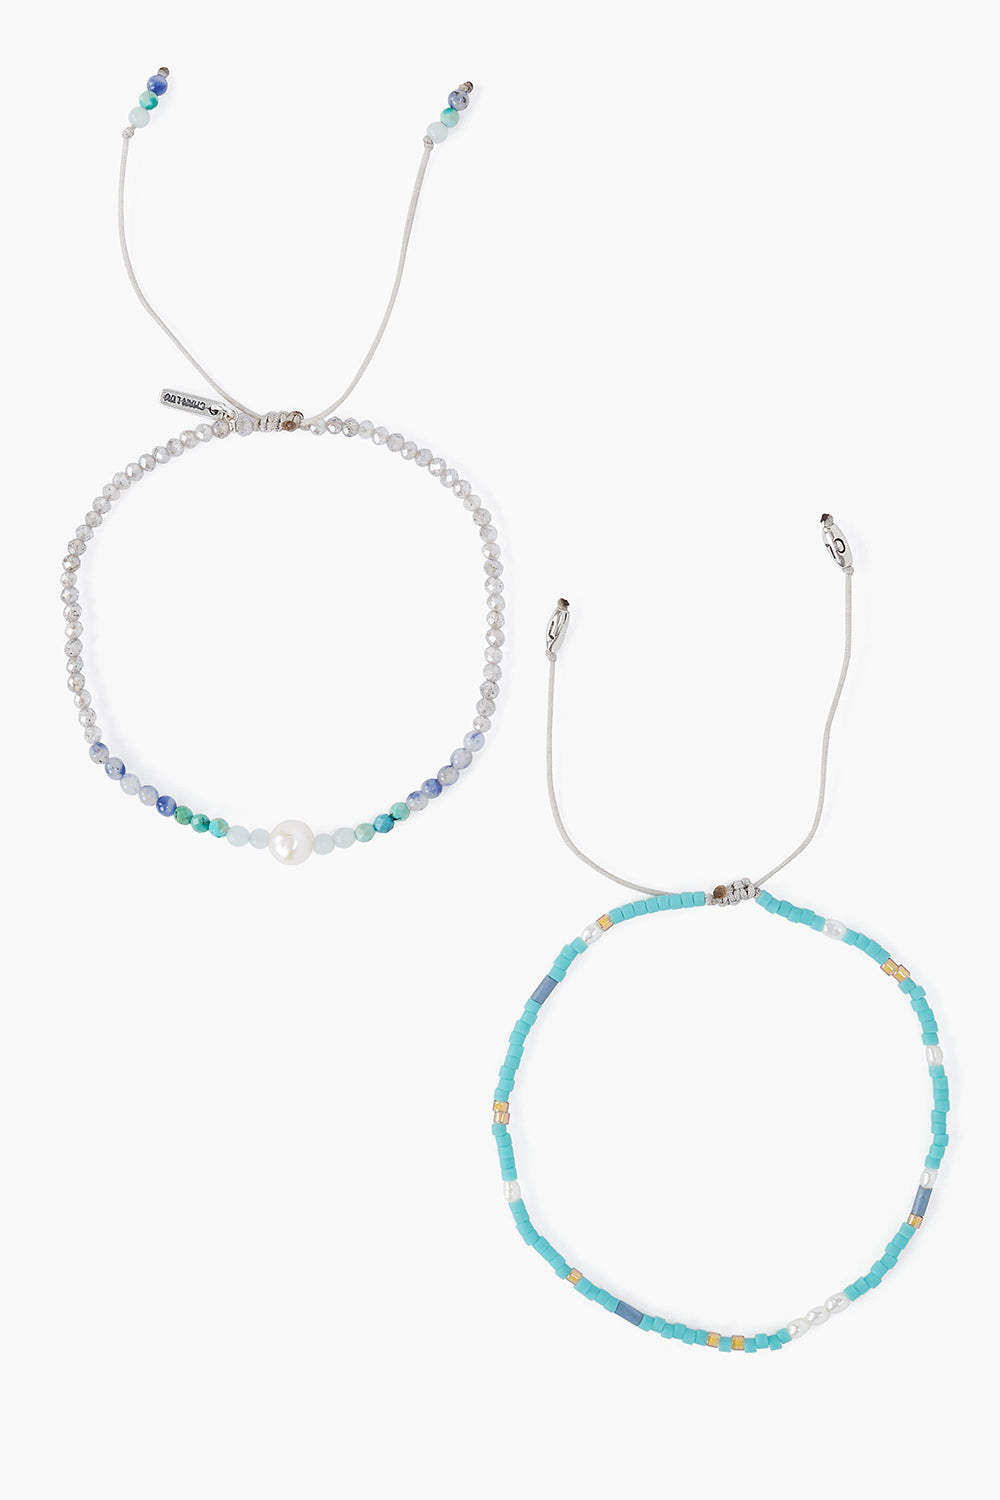 Turquoise Pearls Bracelet Adjustable